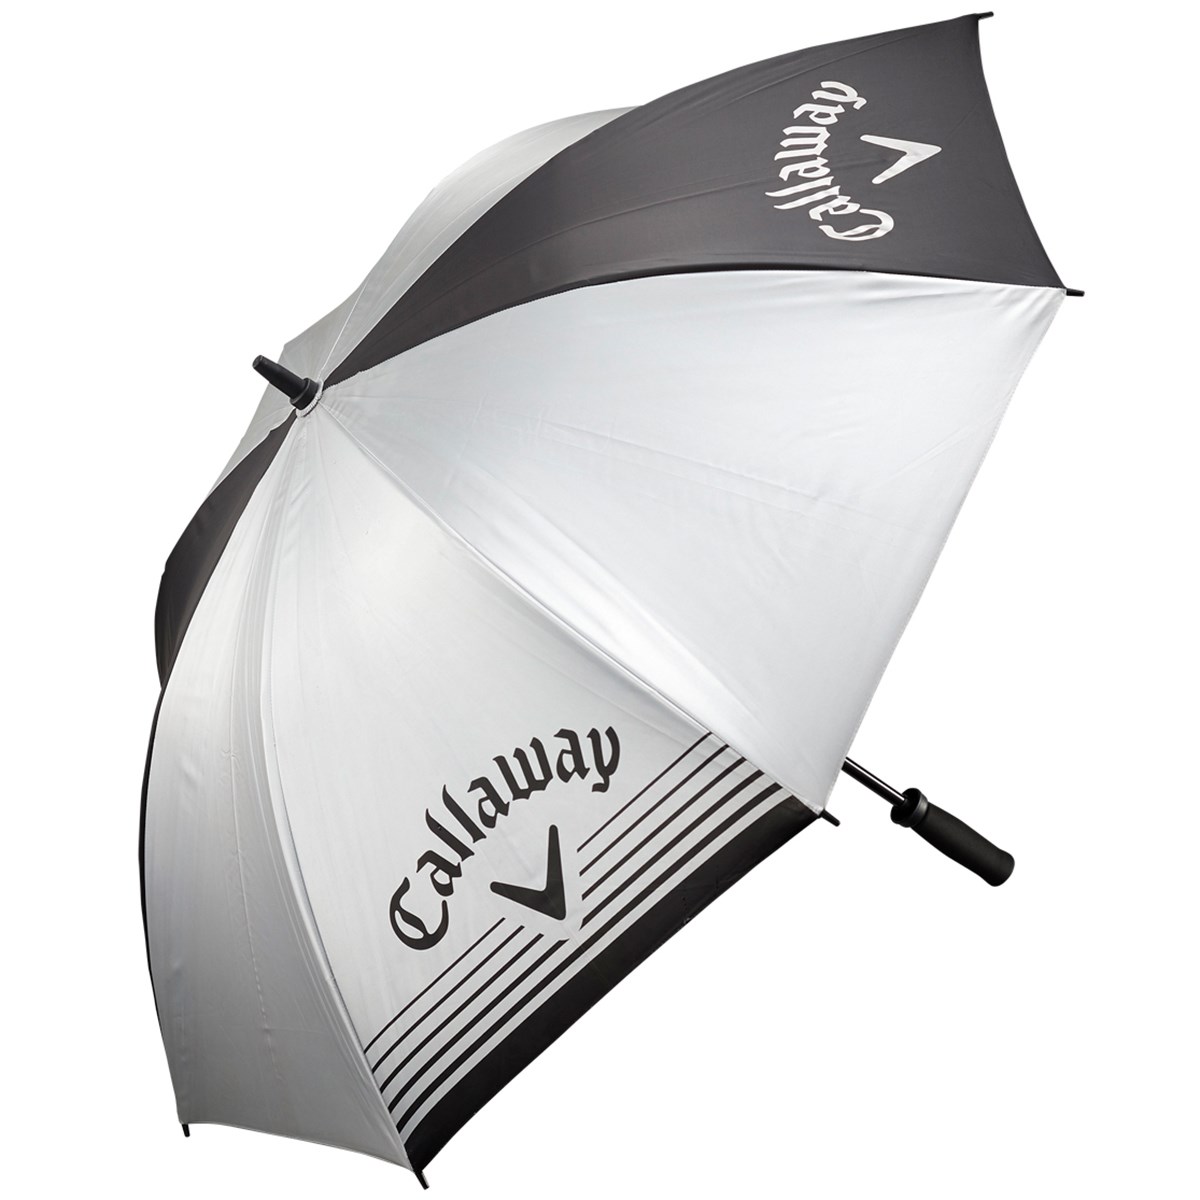 キャロウェイゴルフ(Callaway Golf) UV COLOR 70 JM 傘 